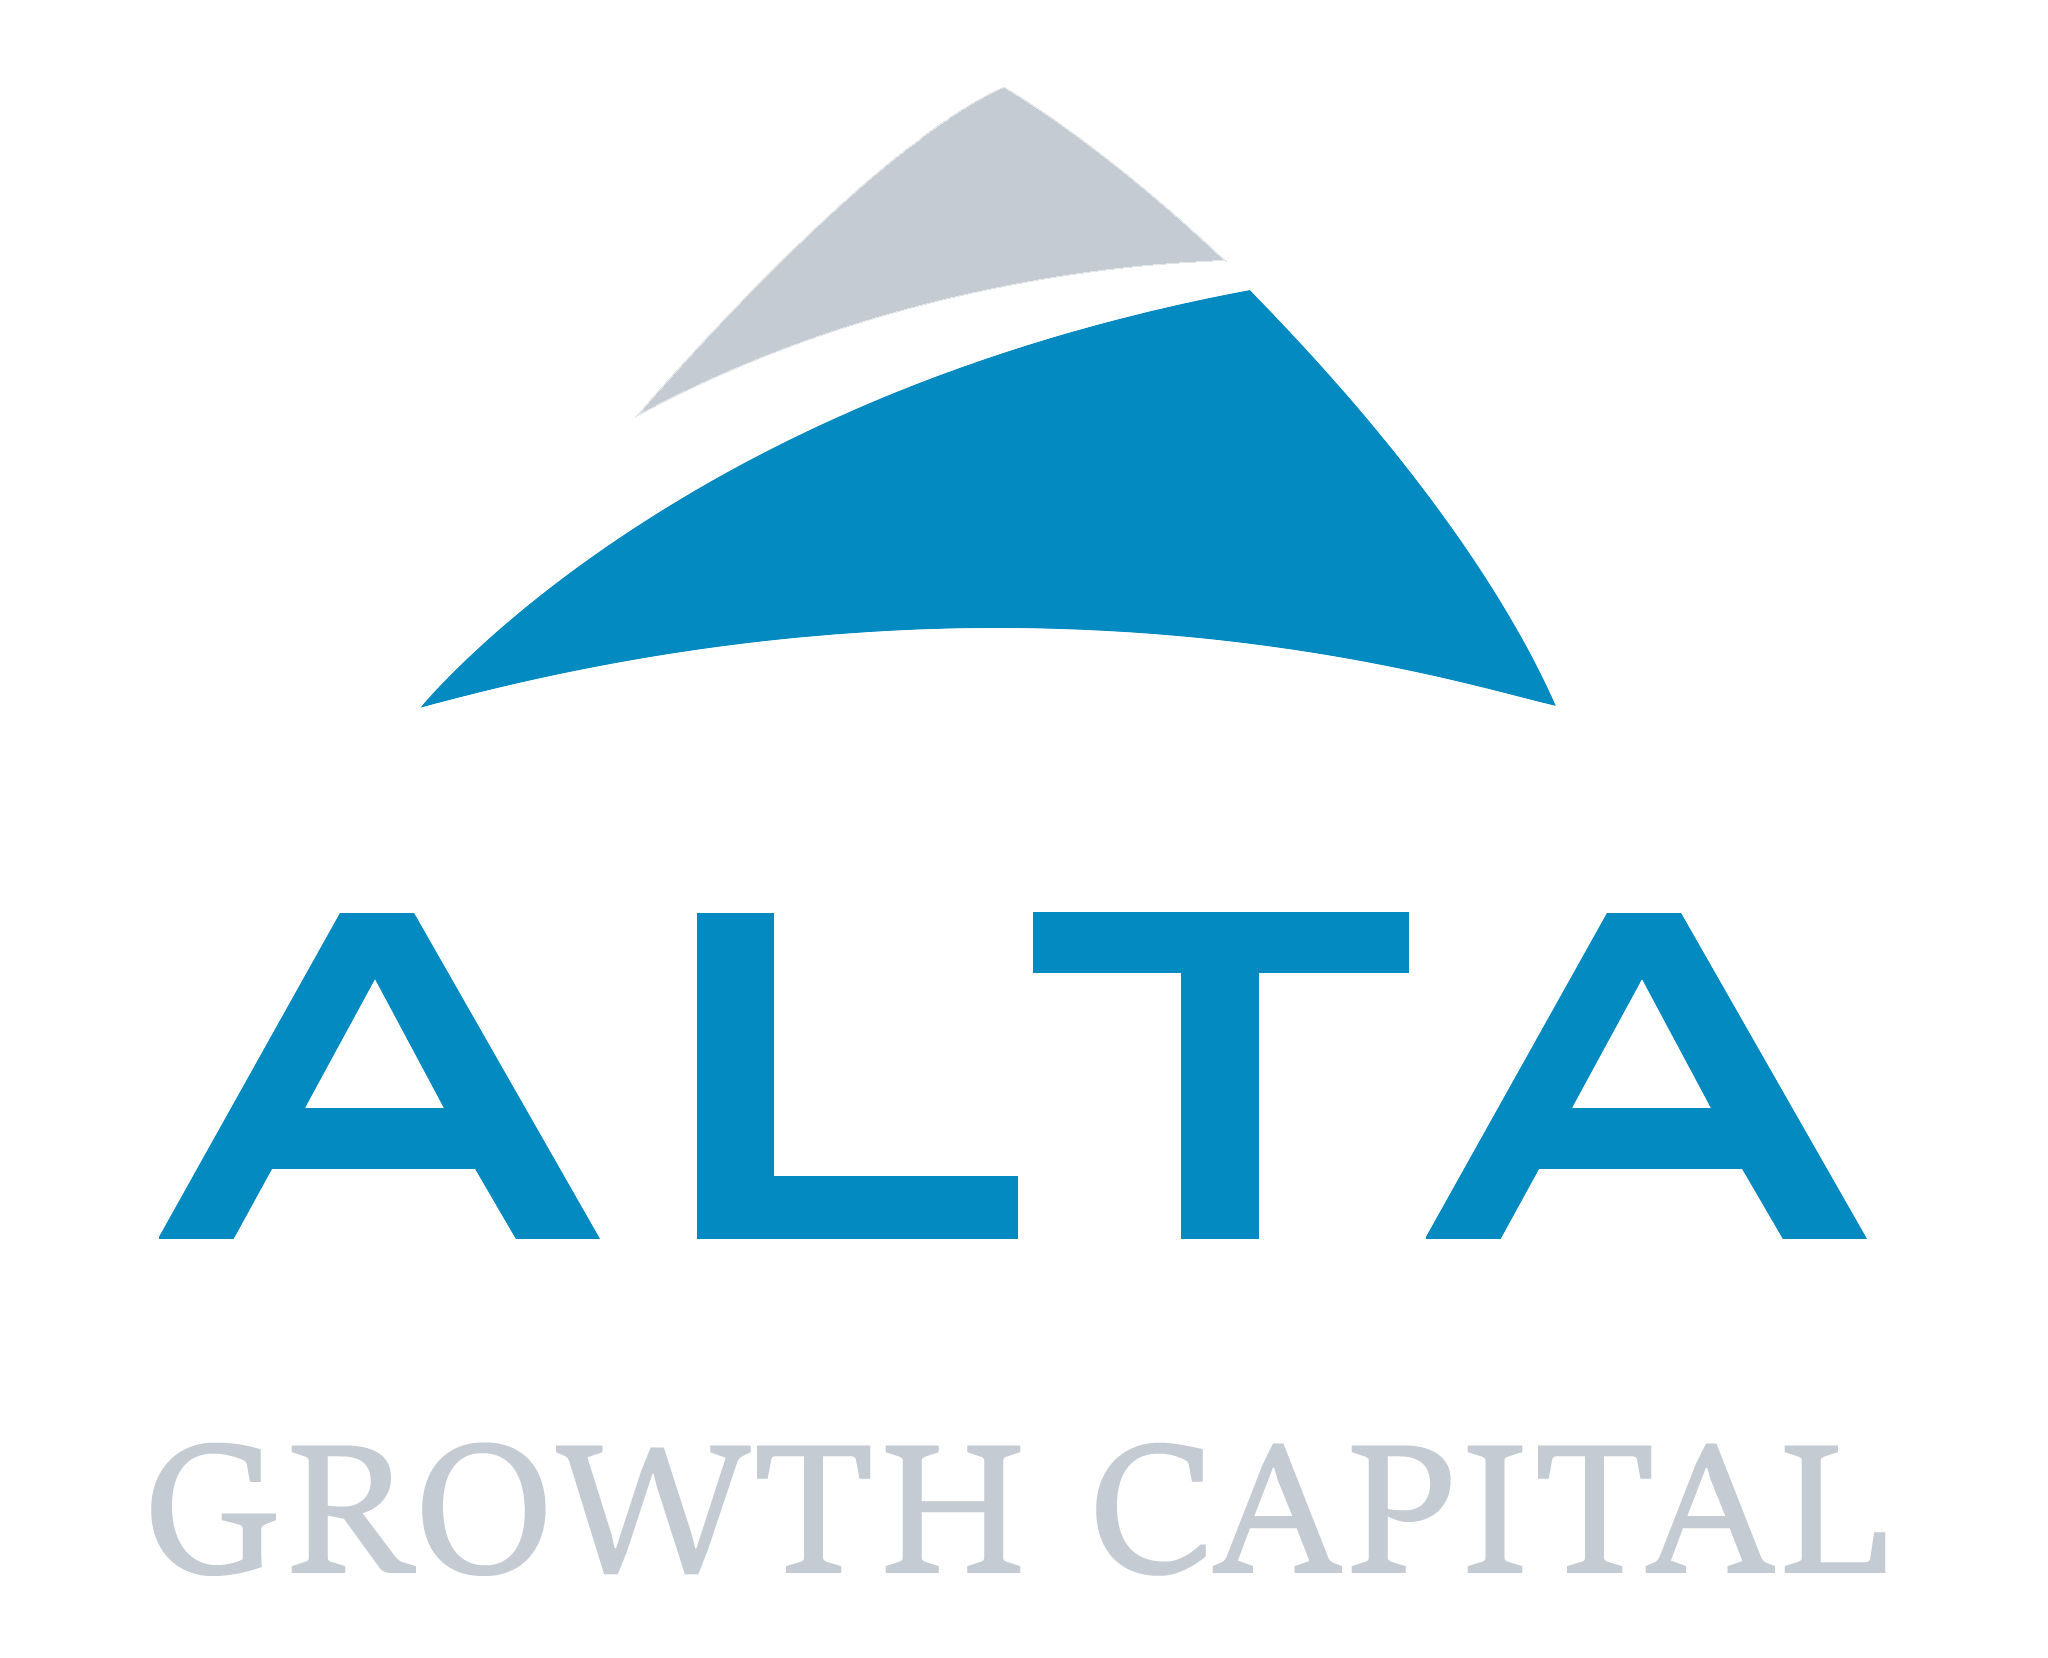 Alta Growth Capital